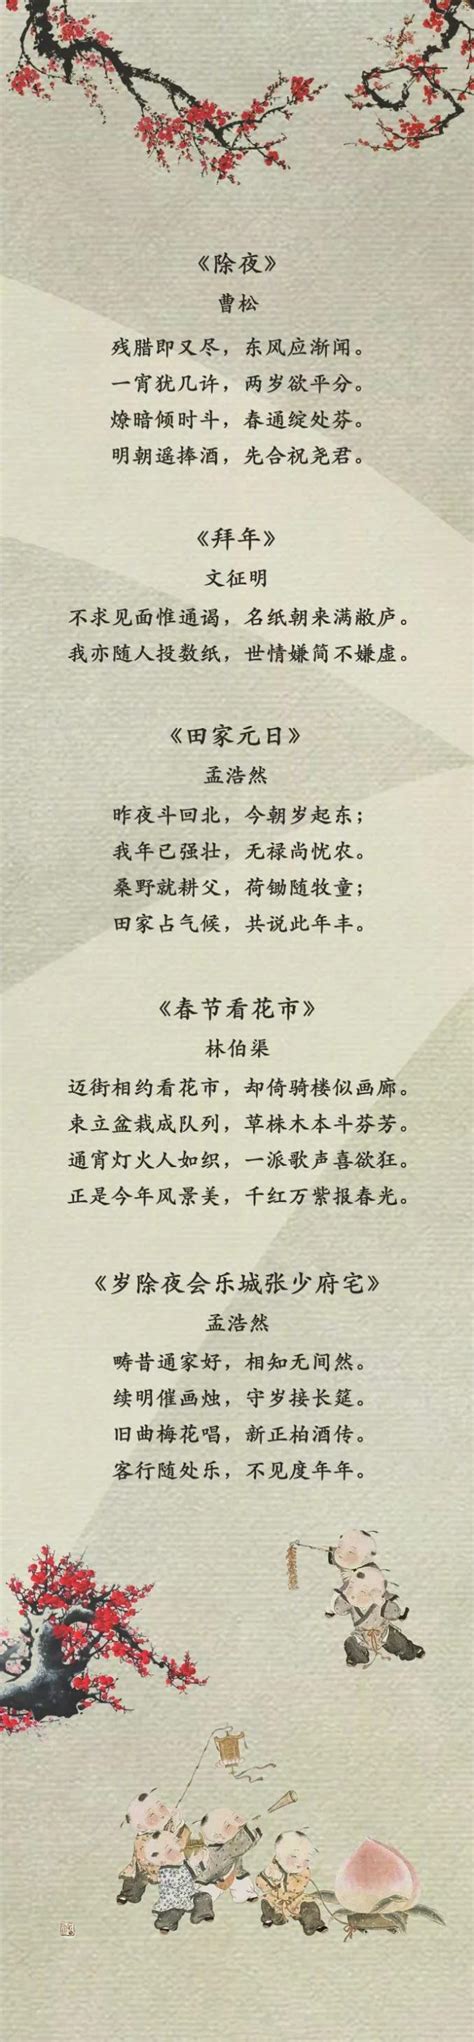 关于春节的现代诗歌